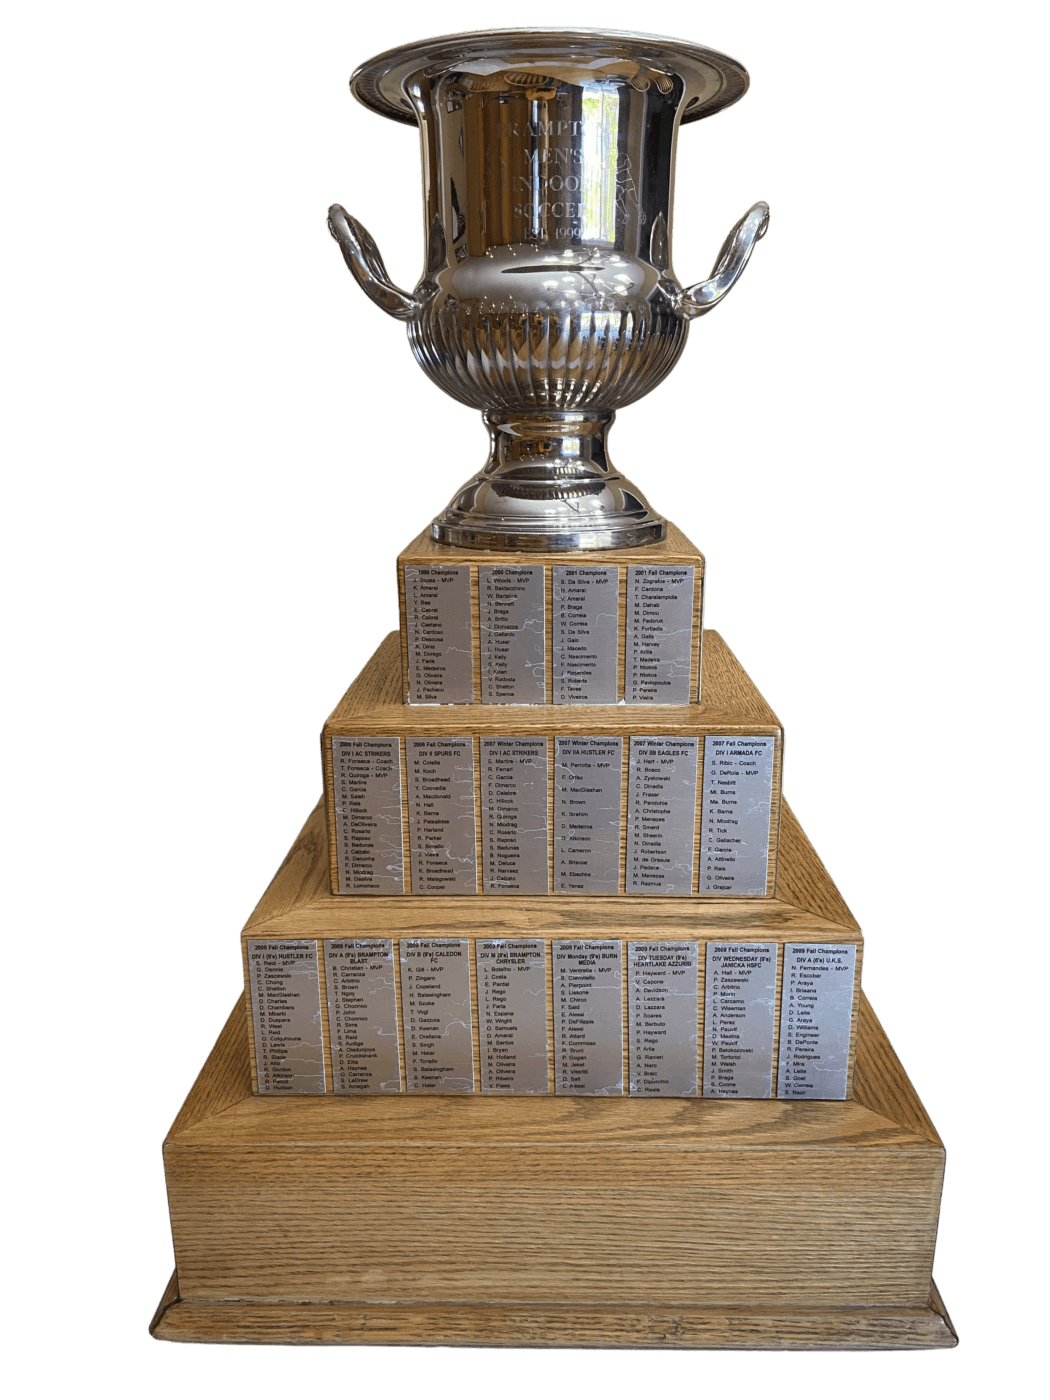 Brampton Adult Soccer Men's Indoor Championship Trophy